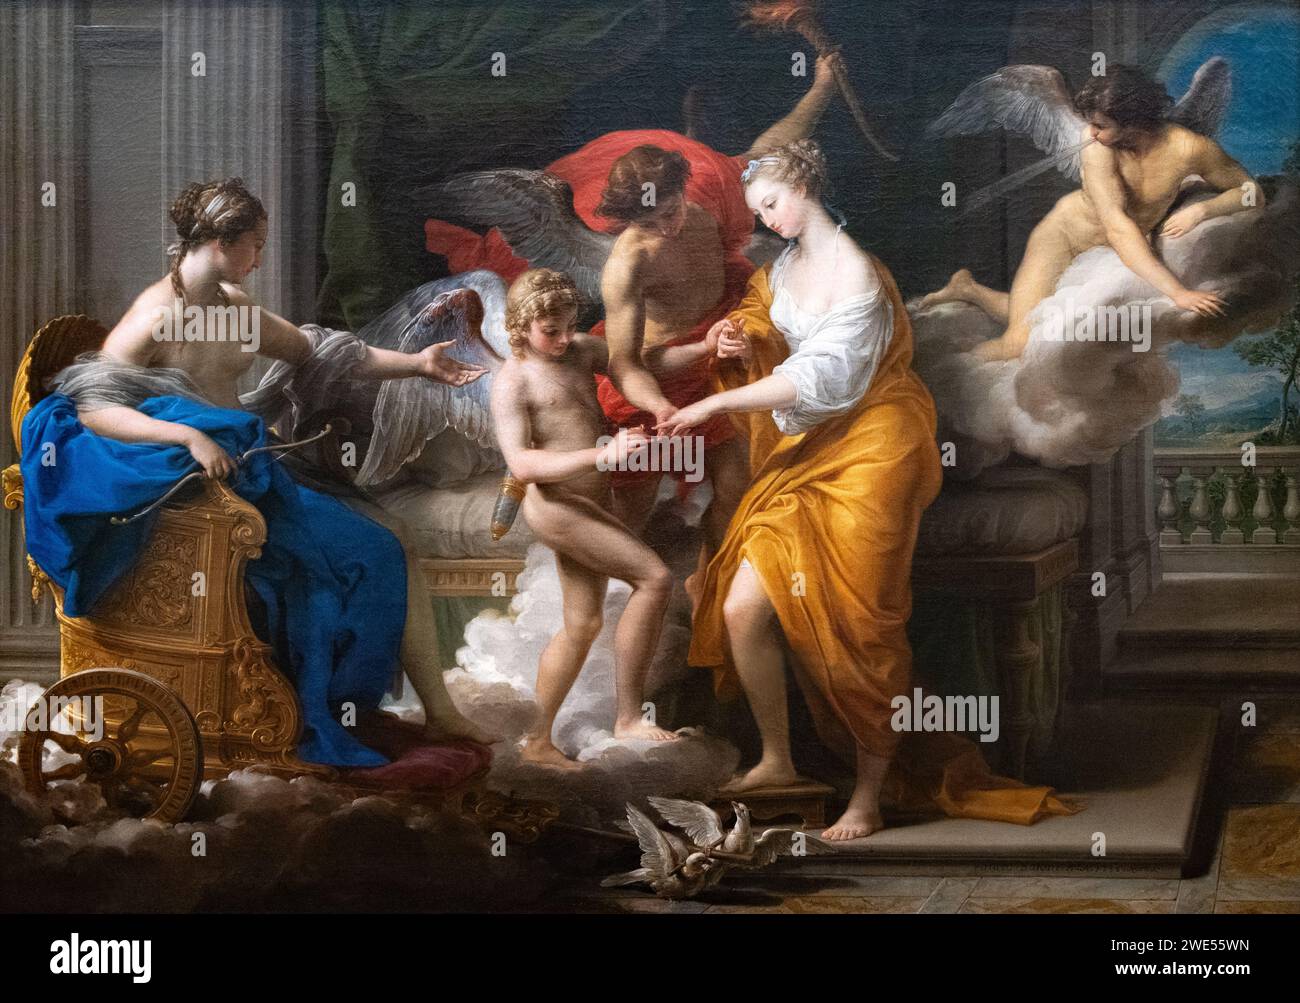 Pompeo Girolami Batoni, oder Pompeo Batoni, Gemälde; die Hochzeit von Cupid und Psyche, 1756. italienischer Maler und Kunst aus dem 18. Jahrhundert. Stockfoto